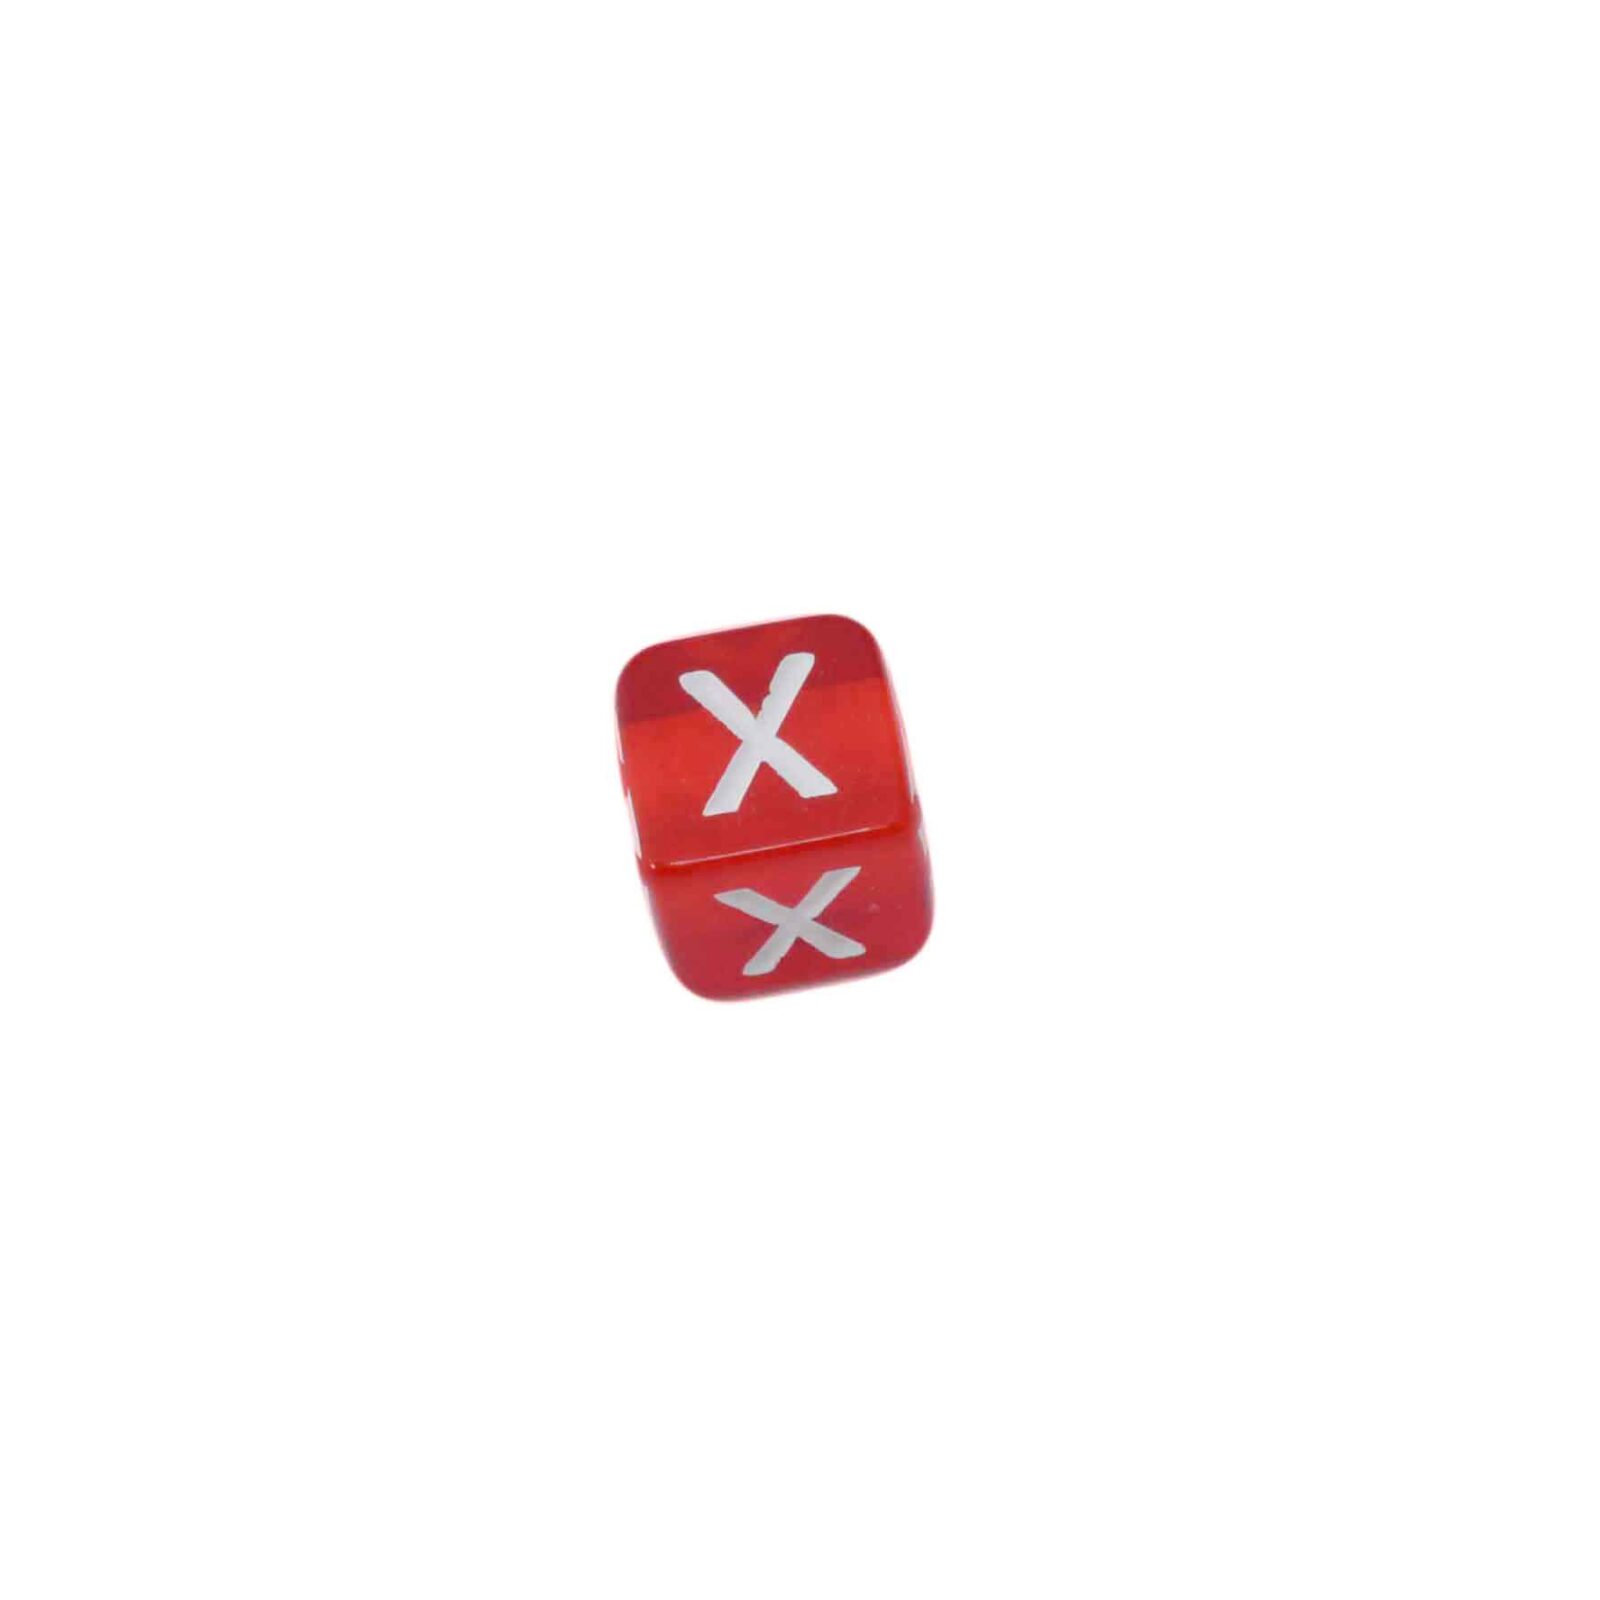 Rode letterkraal X